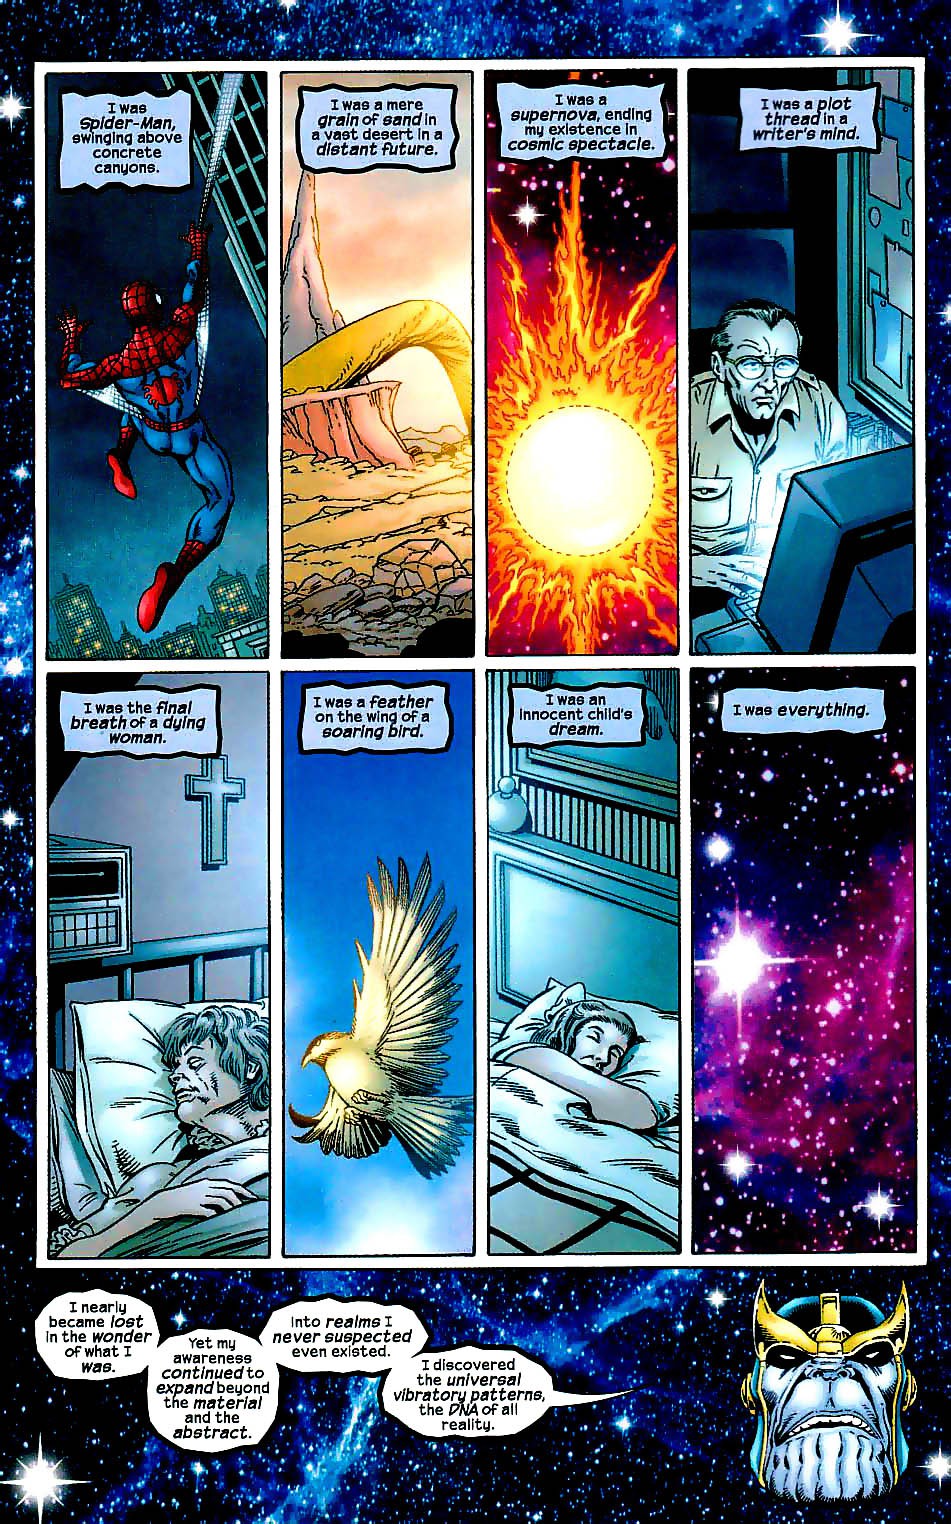 Heart of the Universe, bảo vật vũ trụ giúp Thanos trở thành Chúa Trời, sở hữu quyền năng vượt xa Găng Tay Vô Cực - Ảnh 10.